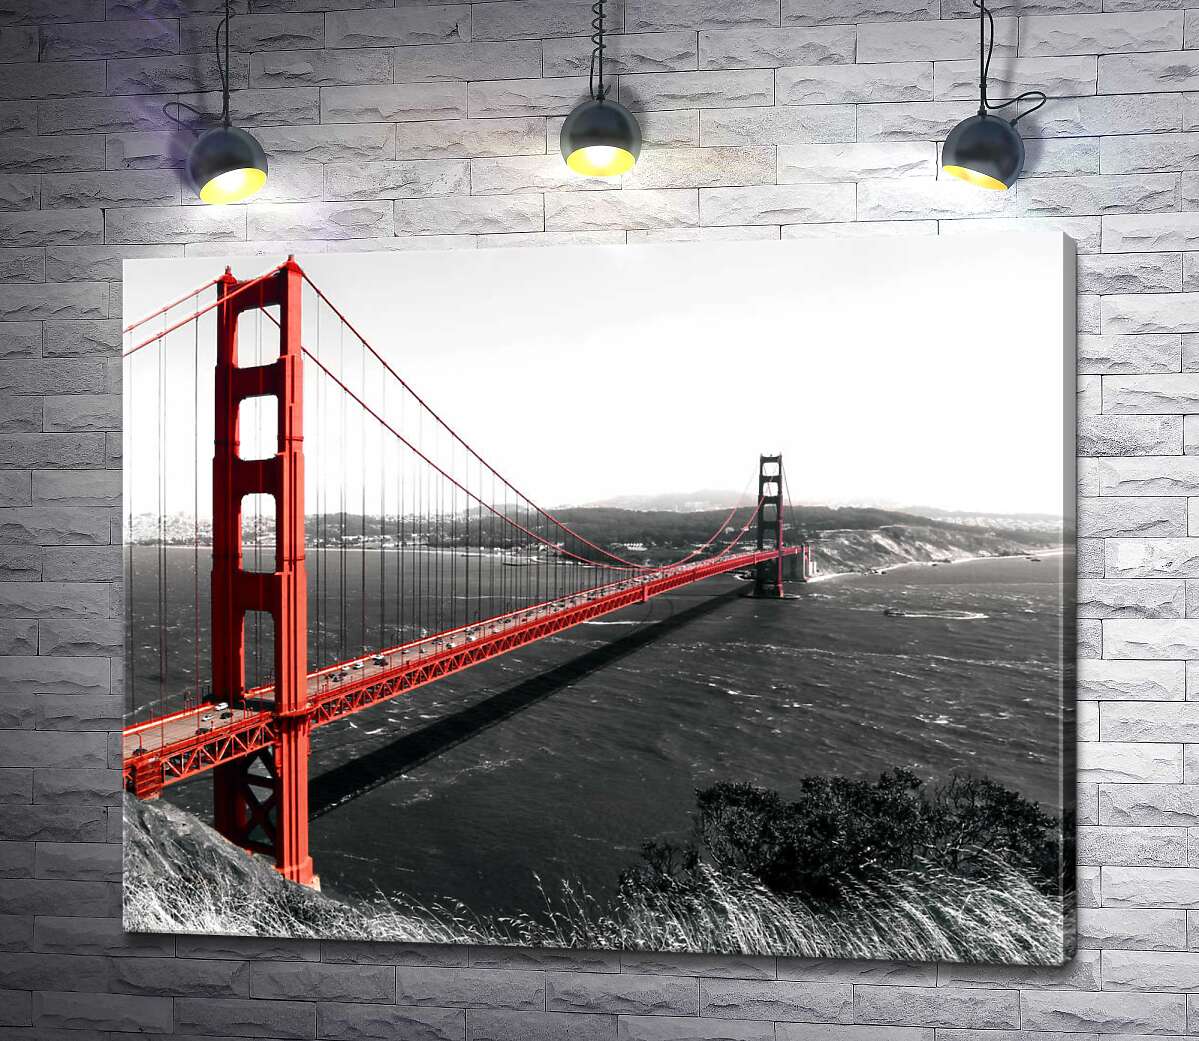 картина Яркий мост "Золотые ворота" (Golden Gate Bridge) проложен над темными водами пролива